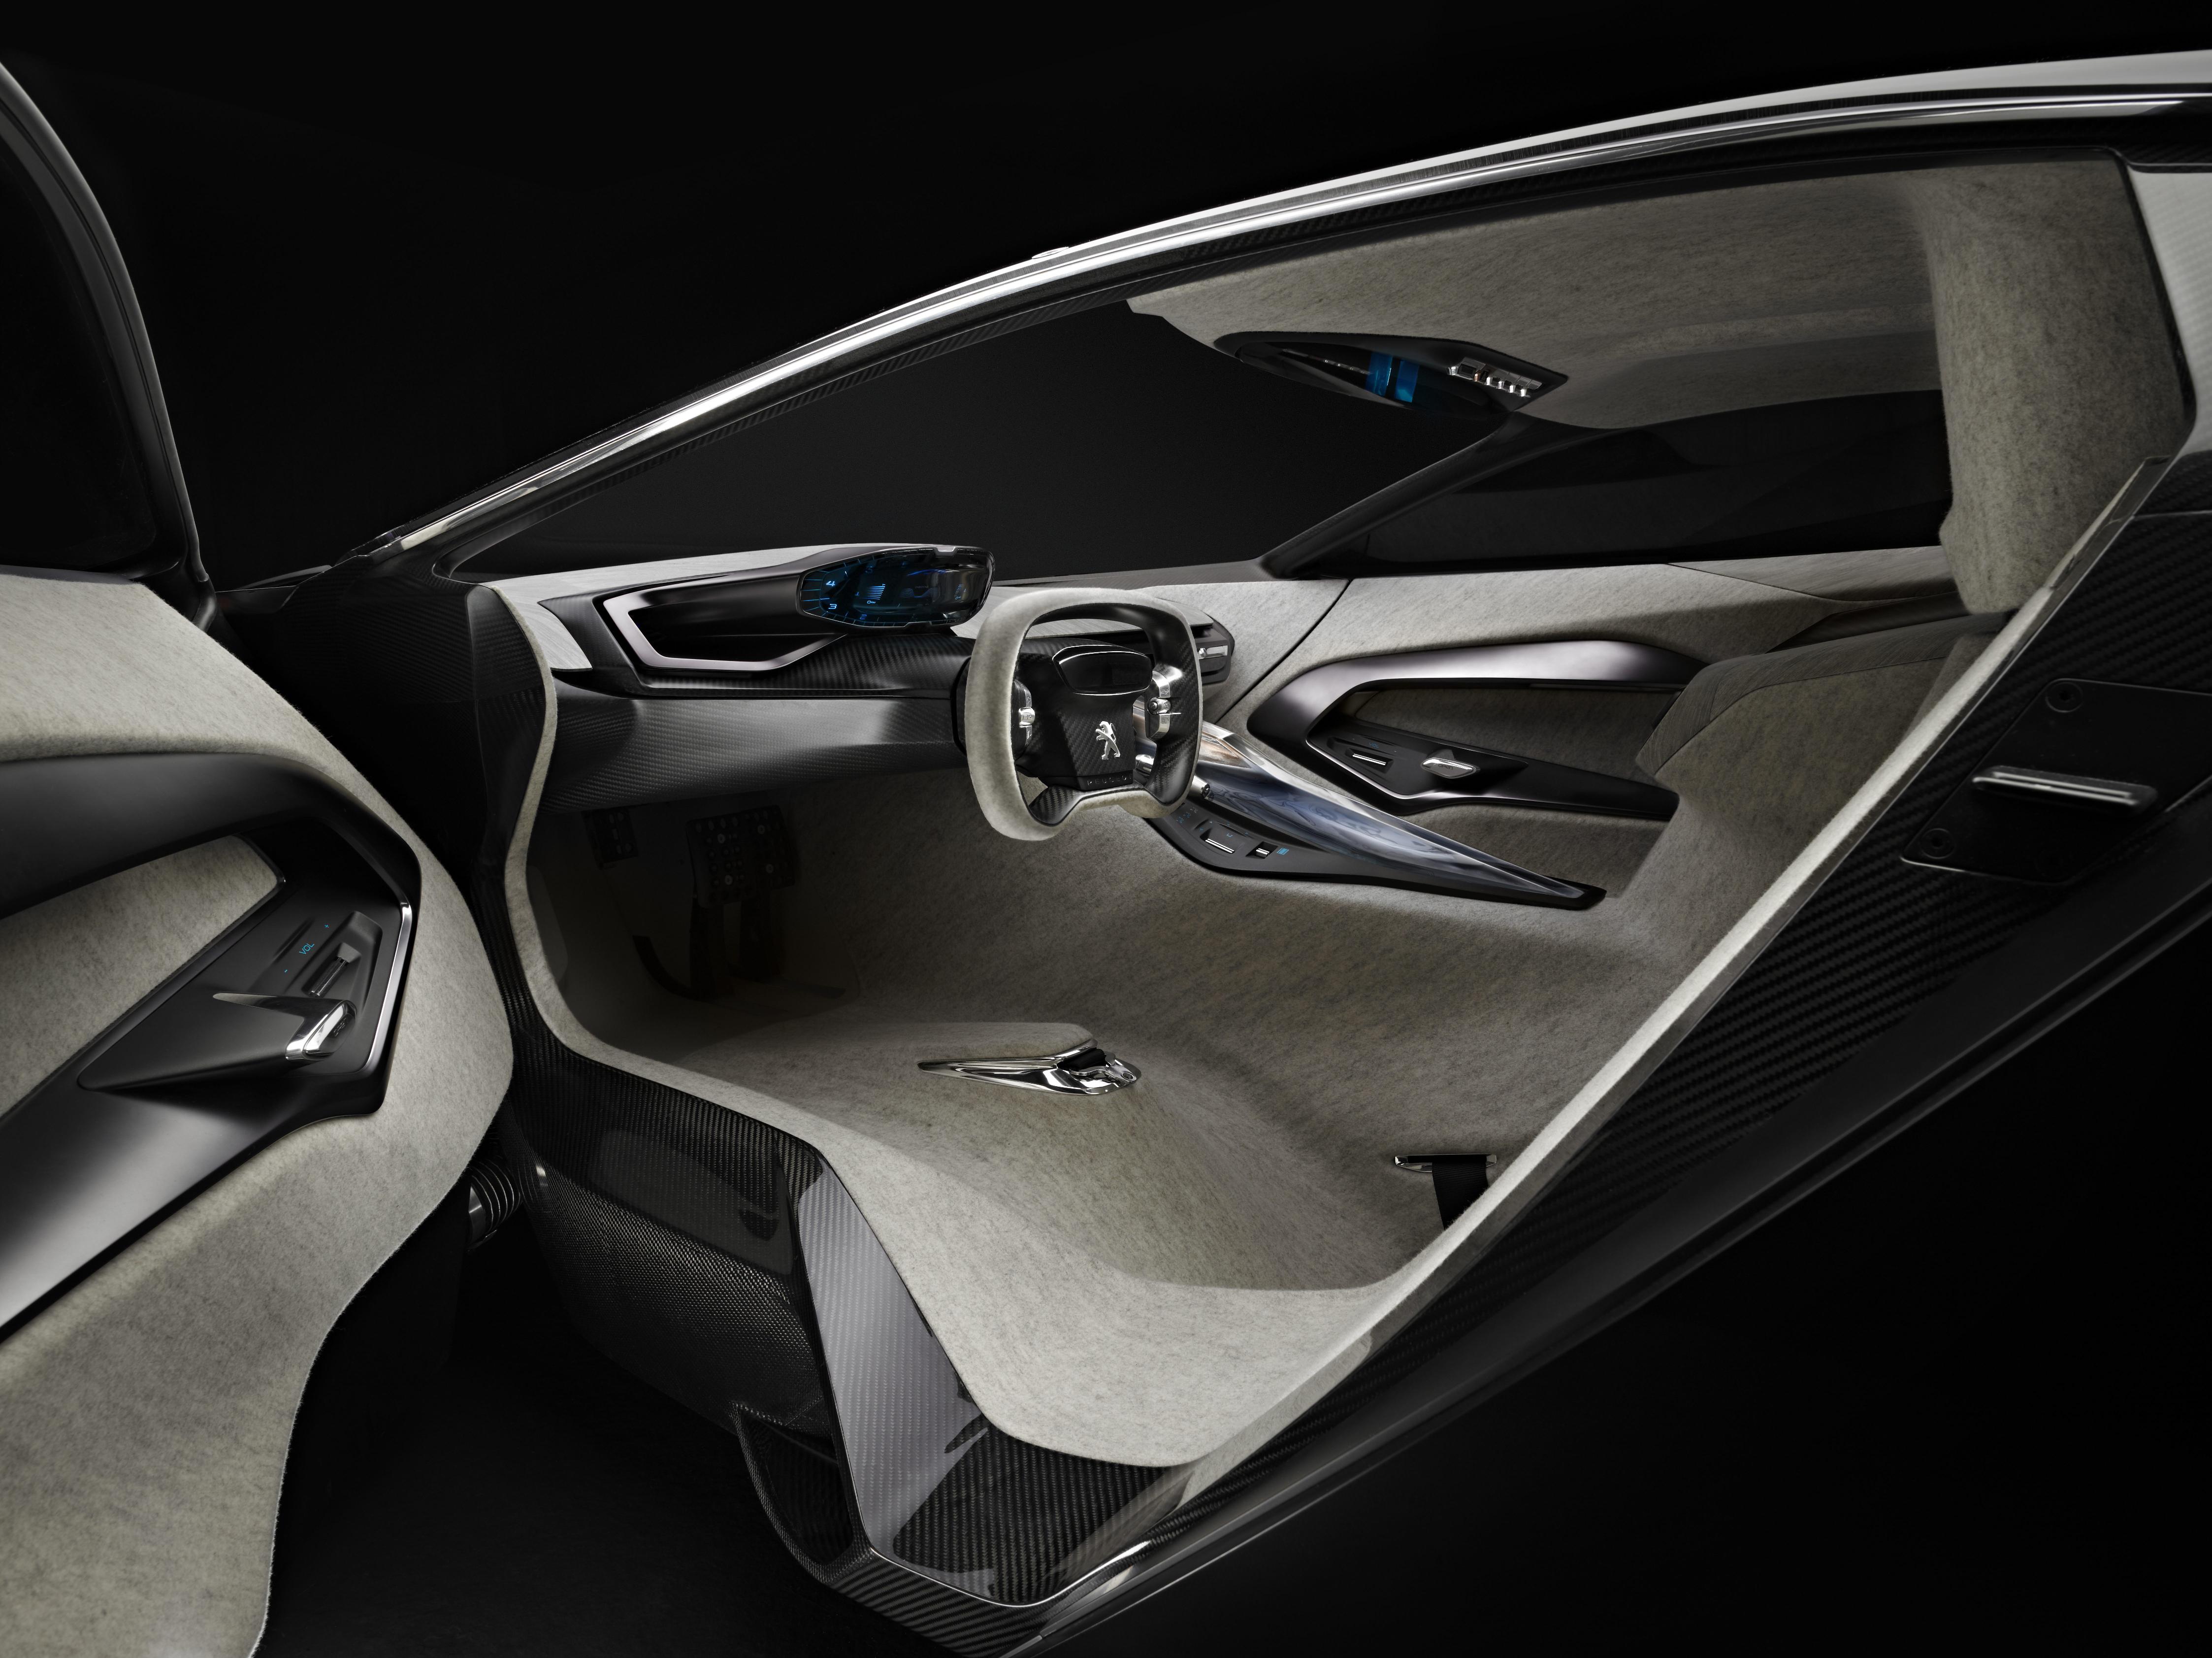 2012, Peugeot, Onyx, Concept, Supercars, Supercar, Interior Wallpaper